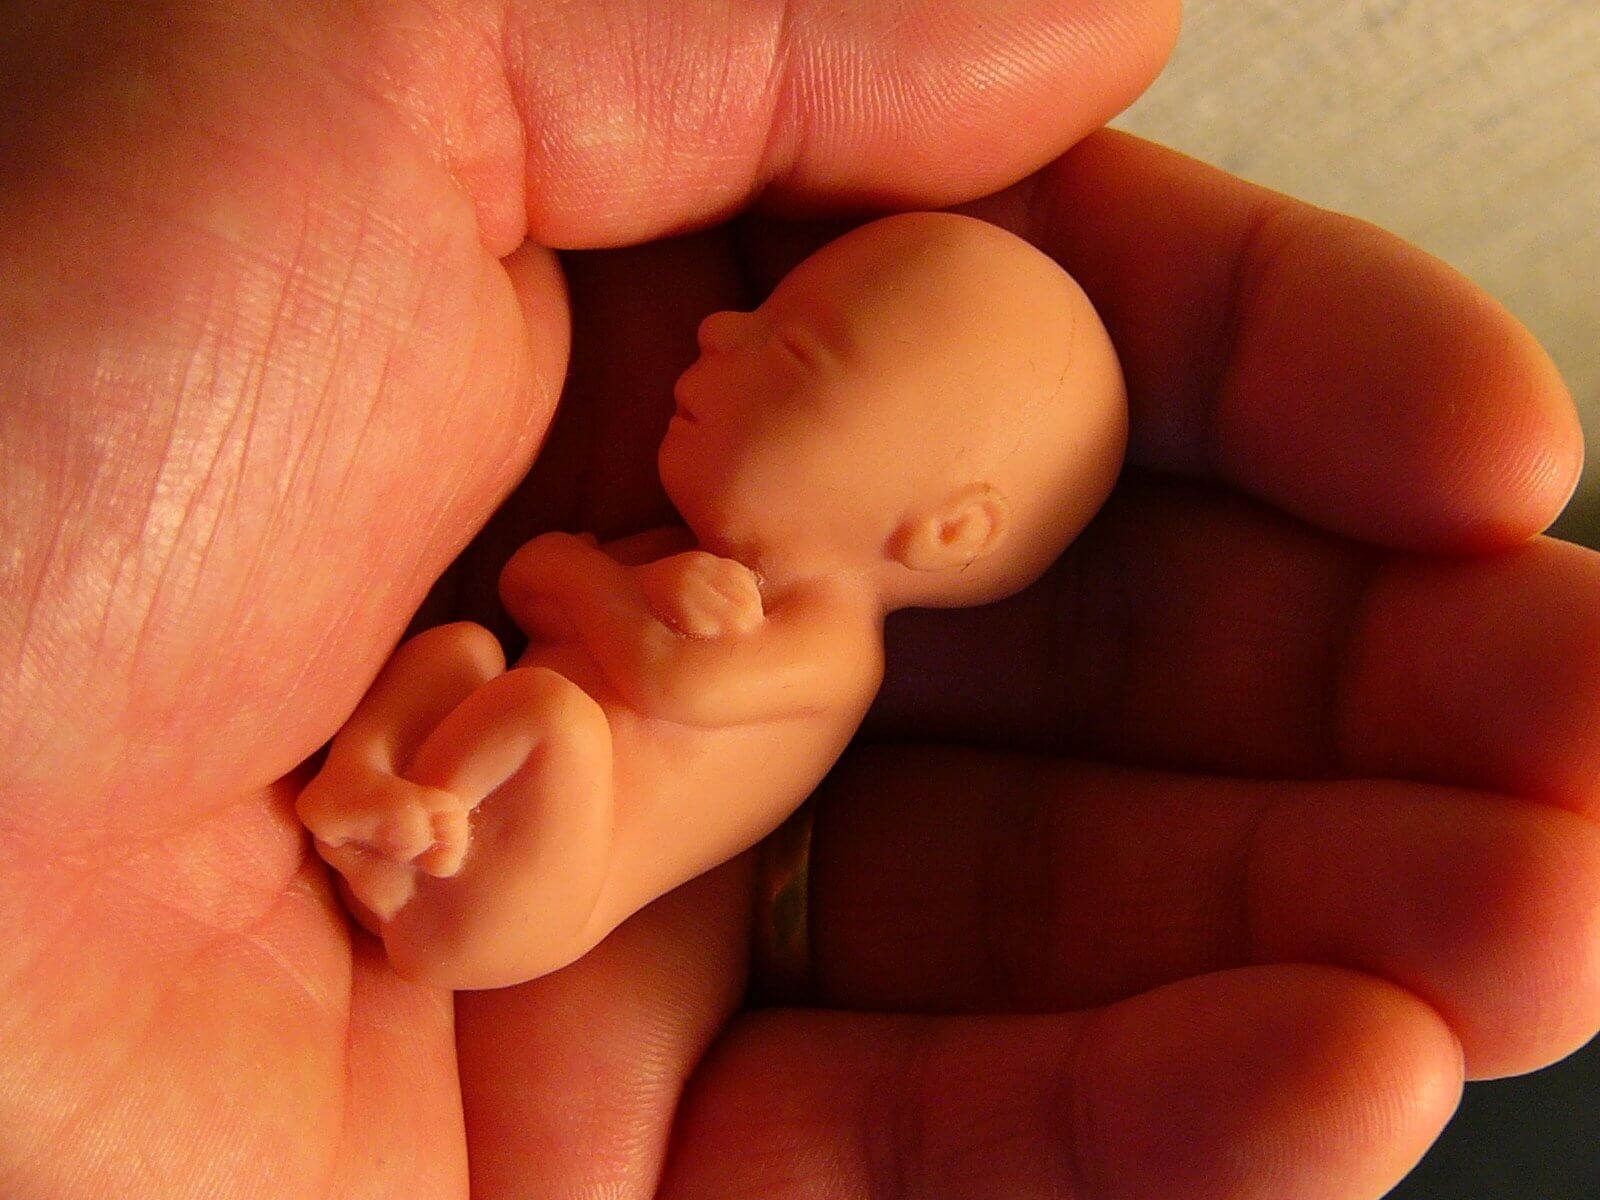 Aborto: A maldição que pende sobre nós